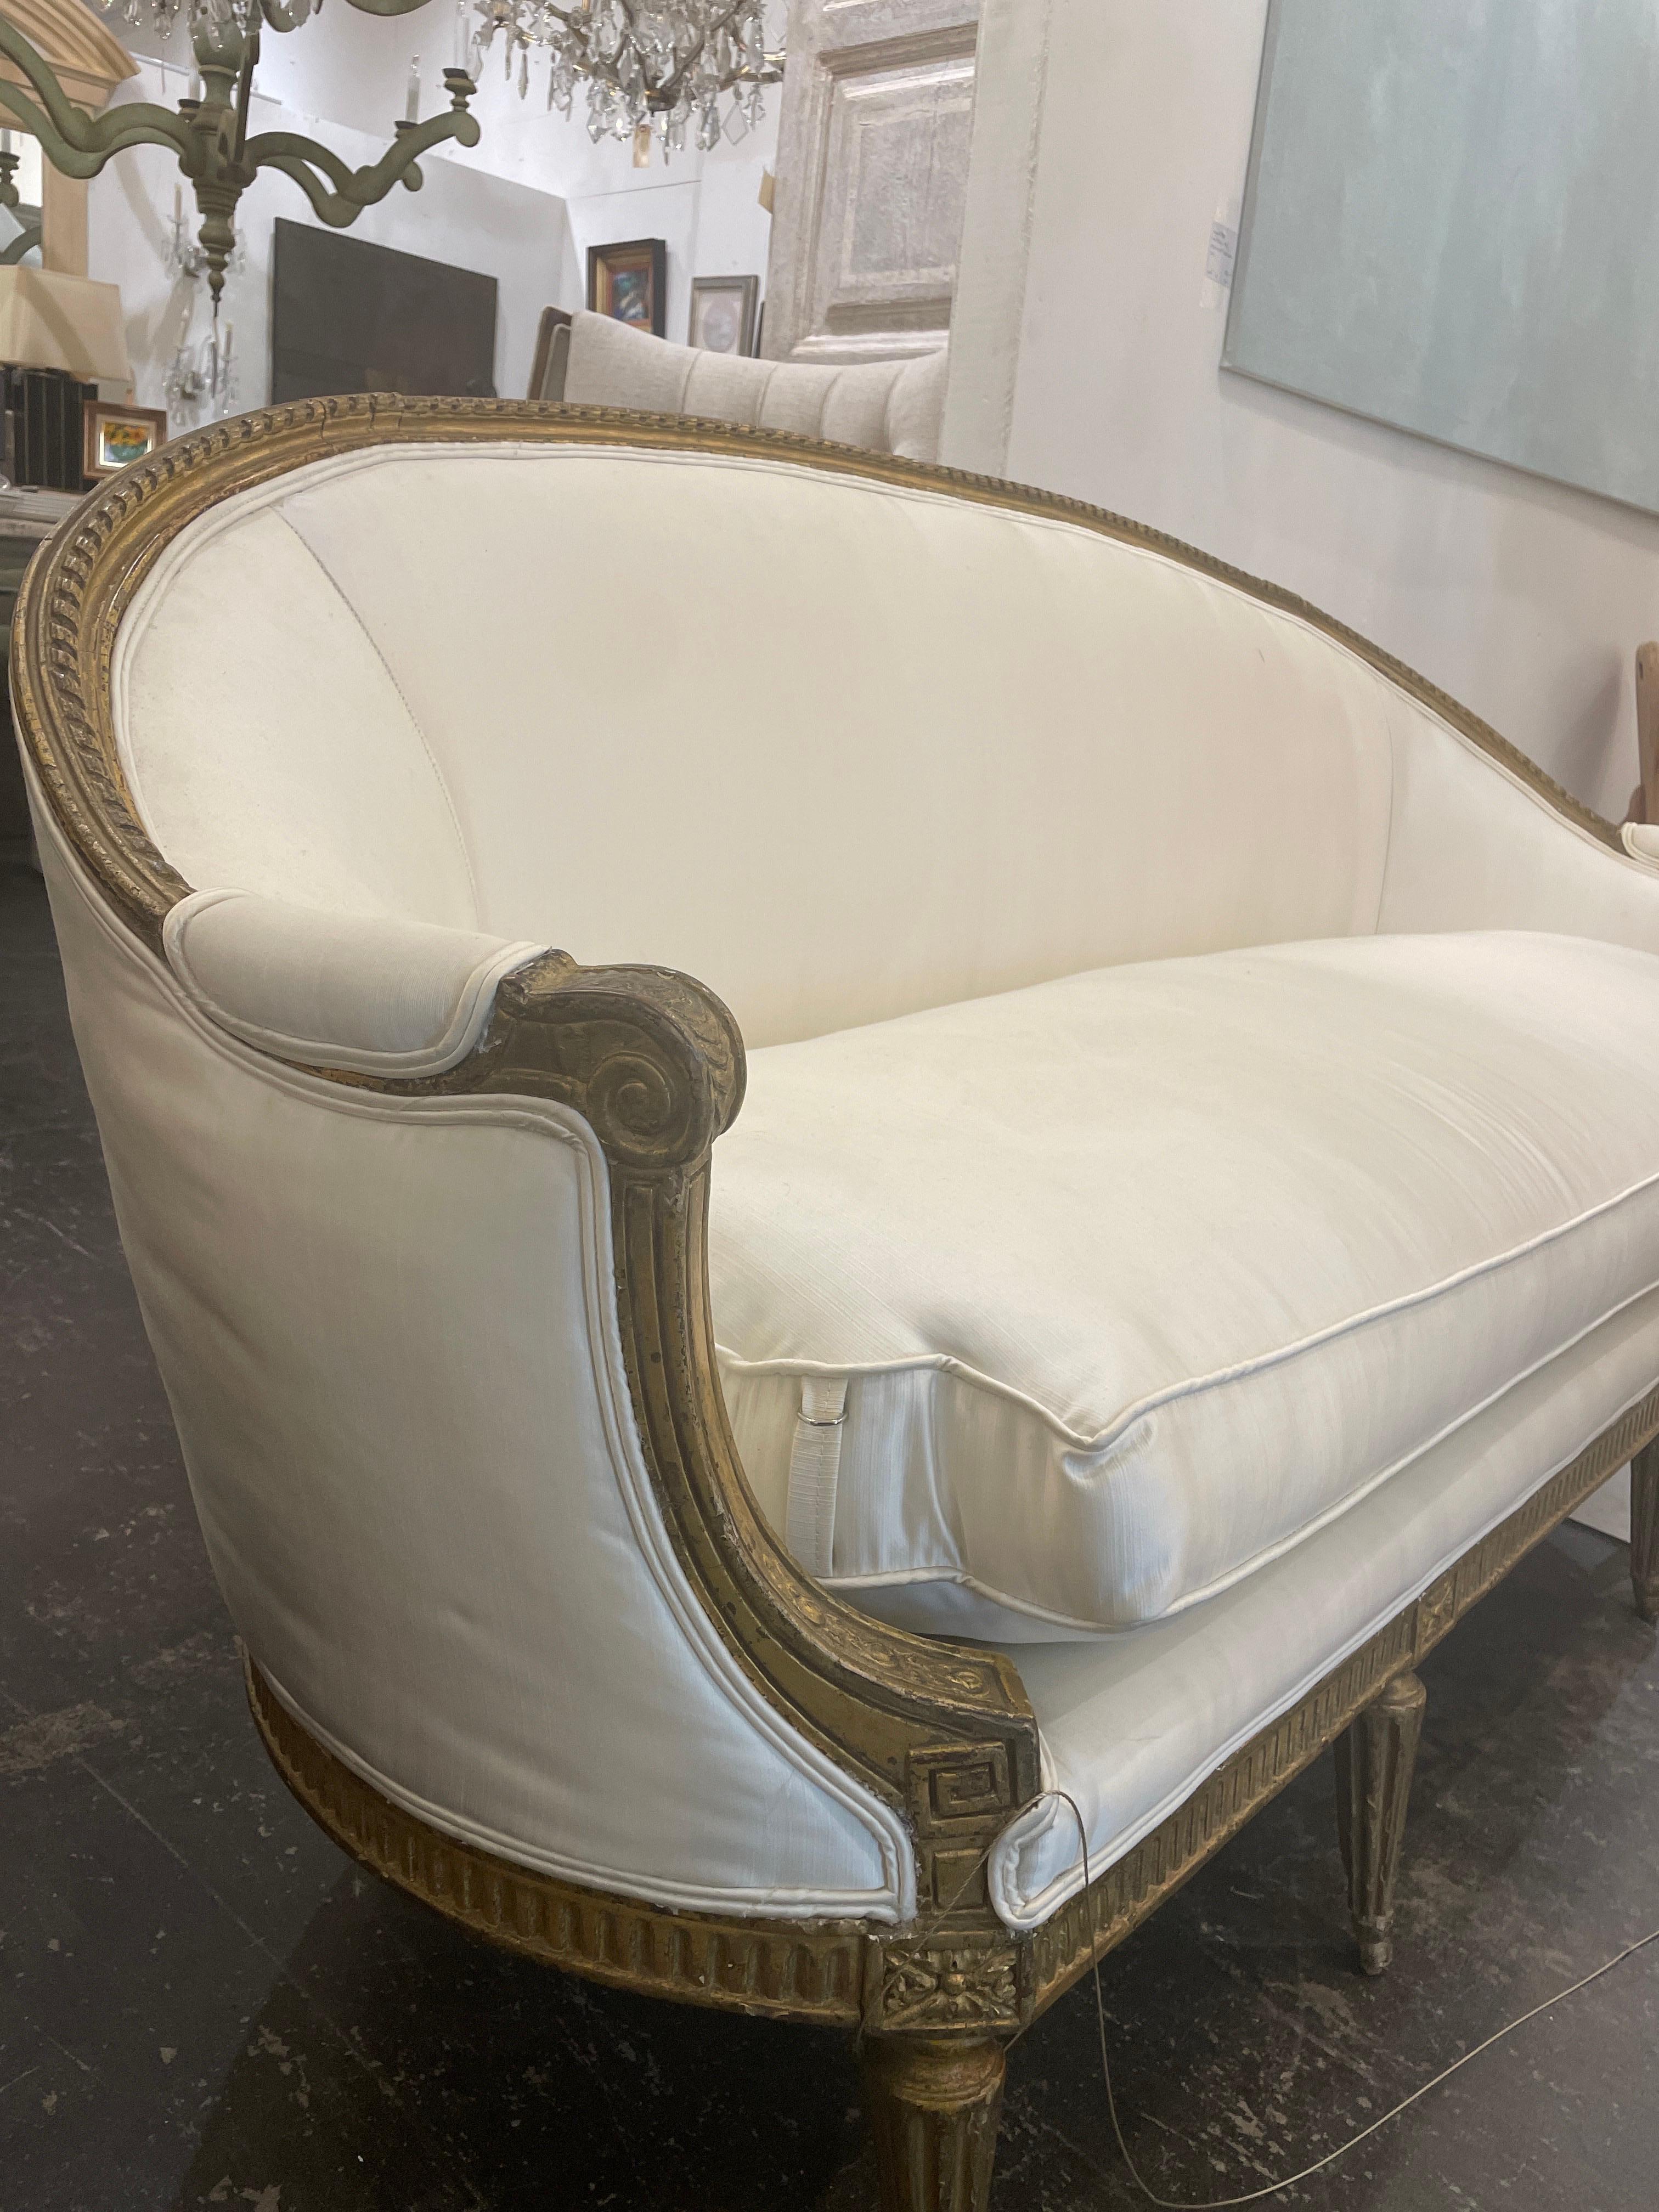 
Lassen Sie sich von der Eleganz eines holzgeschnitzten Louis XVI-Sofas verzaubern, einem zeitlosen Stück, das die Raffinesse und Grandeur des französischen Designs des 18. Jahrhunderts verkörpert. Dieses exquisite, mit viel Liebe zum Detail